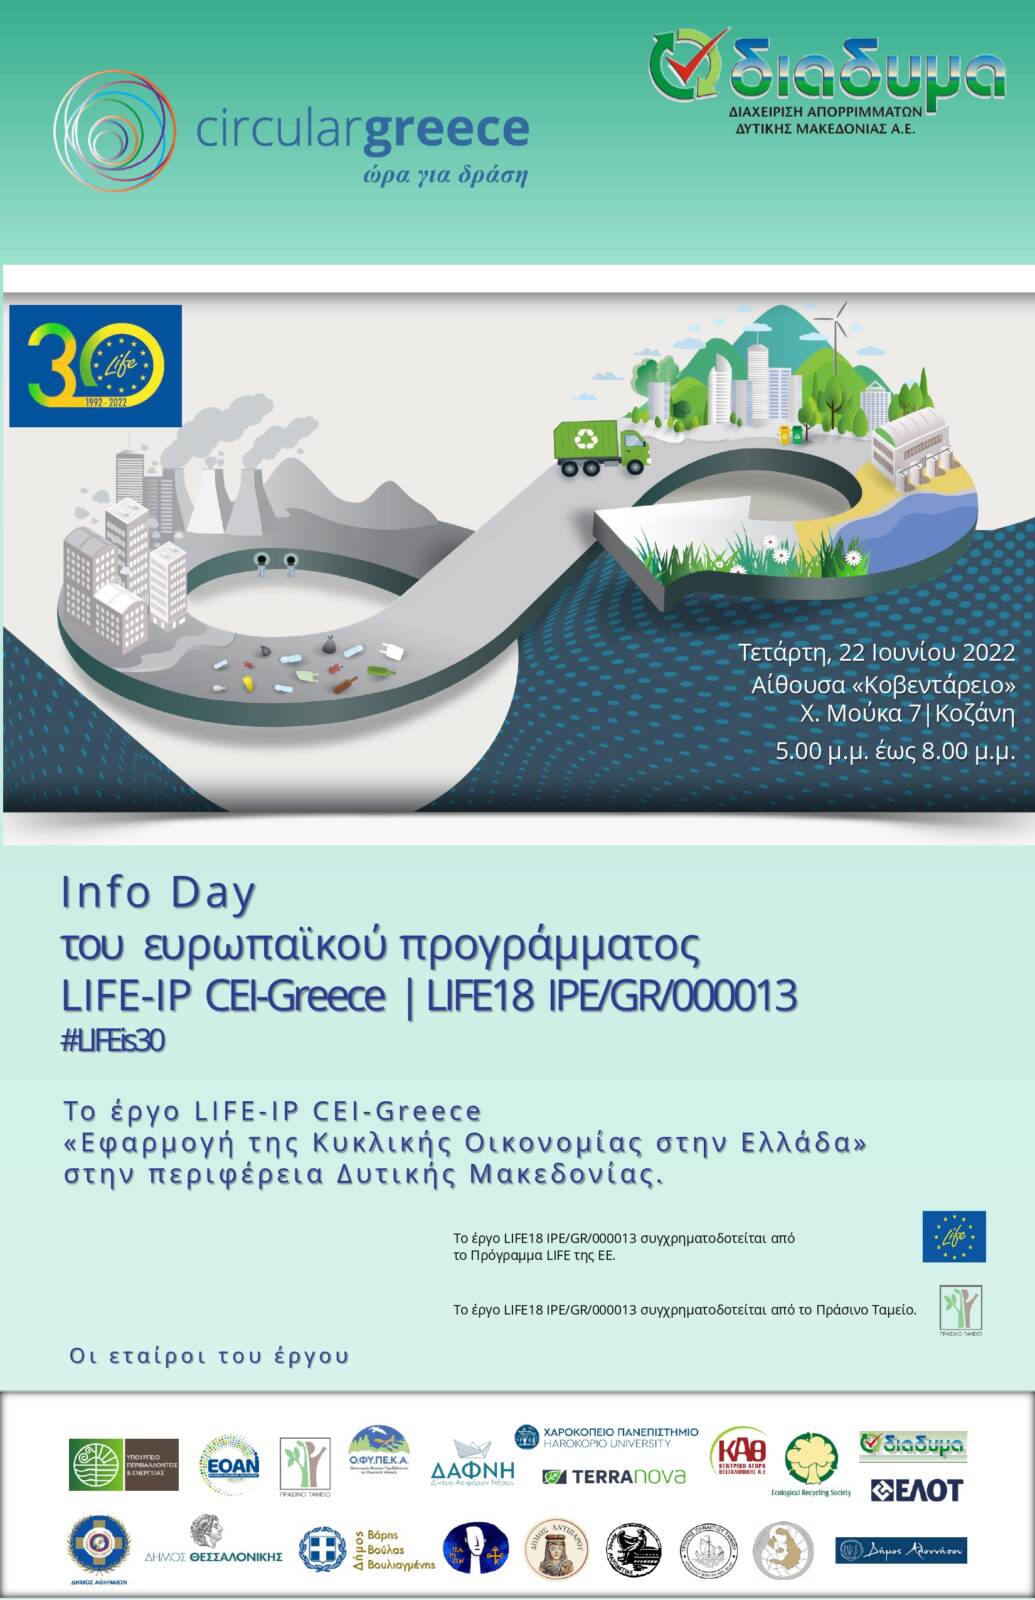 Info Day: Το ευρωπαϊκό πρόγραμμα LIFE-IP CEI-Greece «Εφαρμογή της Κυκλικής Οικονομίας στην Ελλάδα» στην περιφέρεια Δυτικής Μακεδονίας